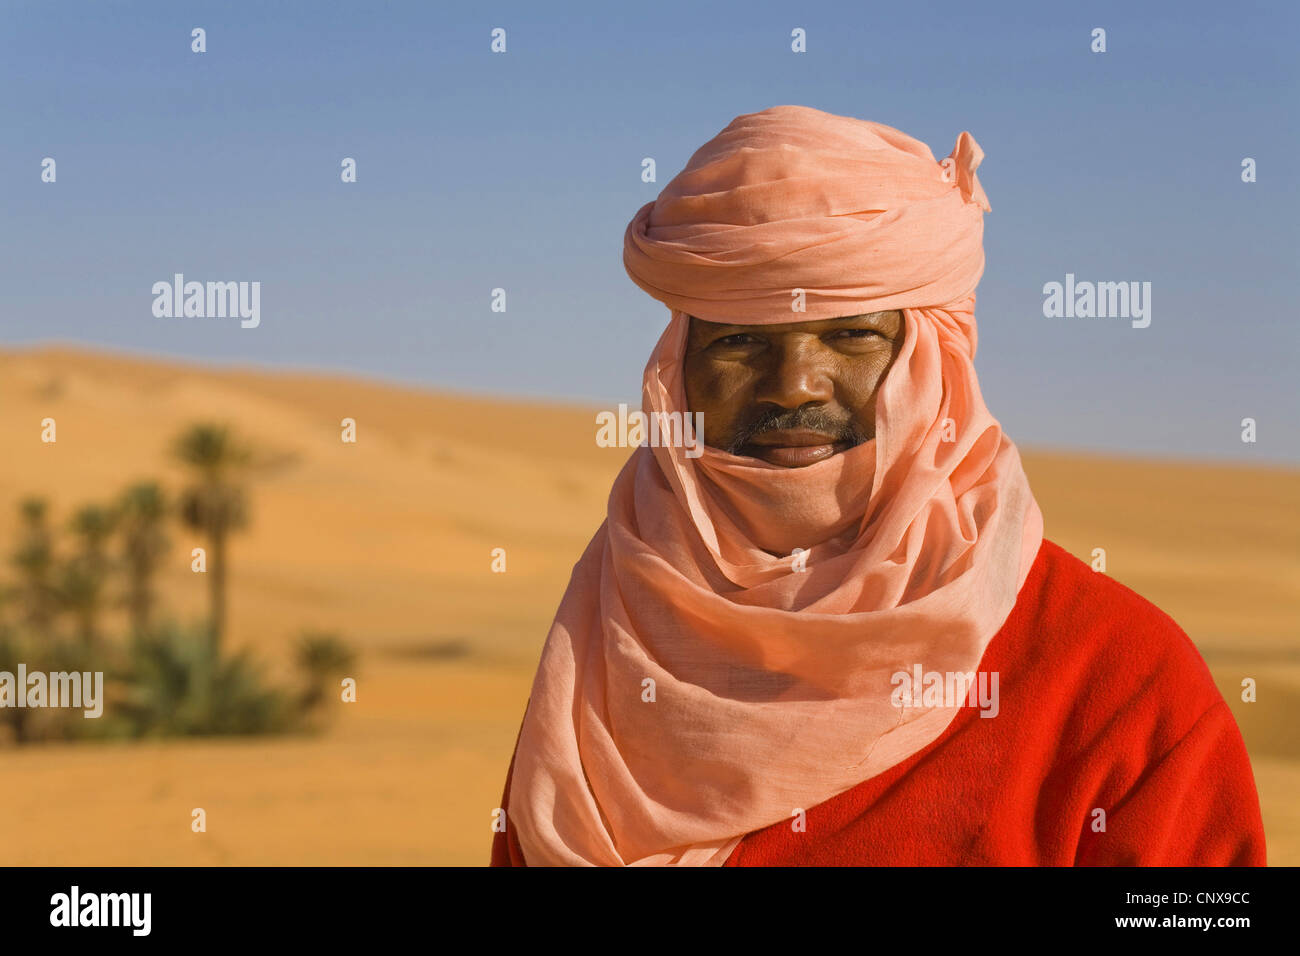 Ritratto di un Tuareg nel deserto nella parte anteriore del palm oasis, Libia, Sahara, Um el Ma Foto Stock